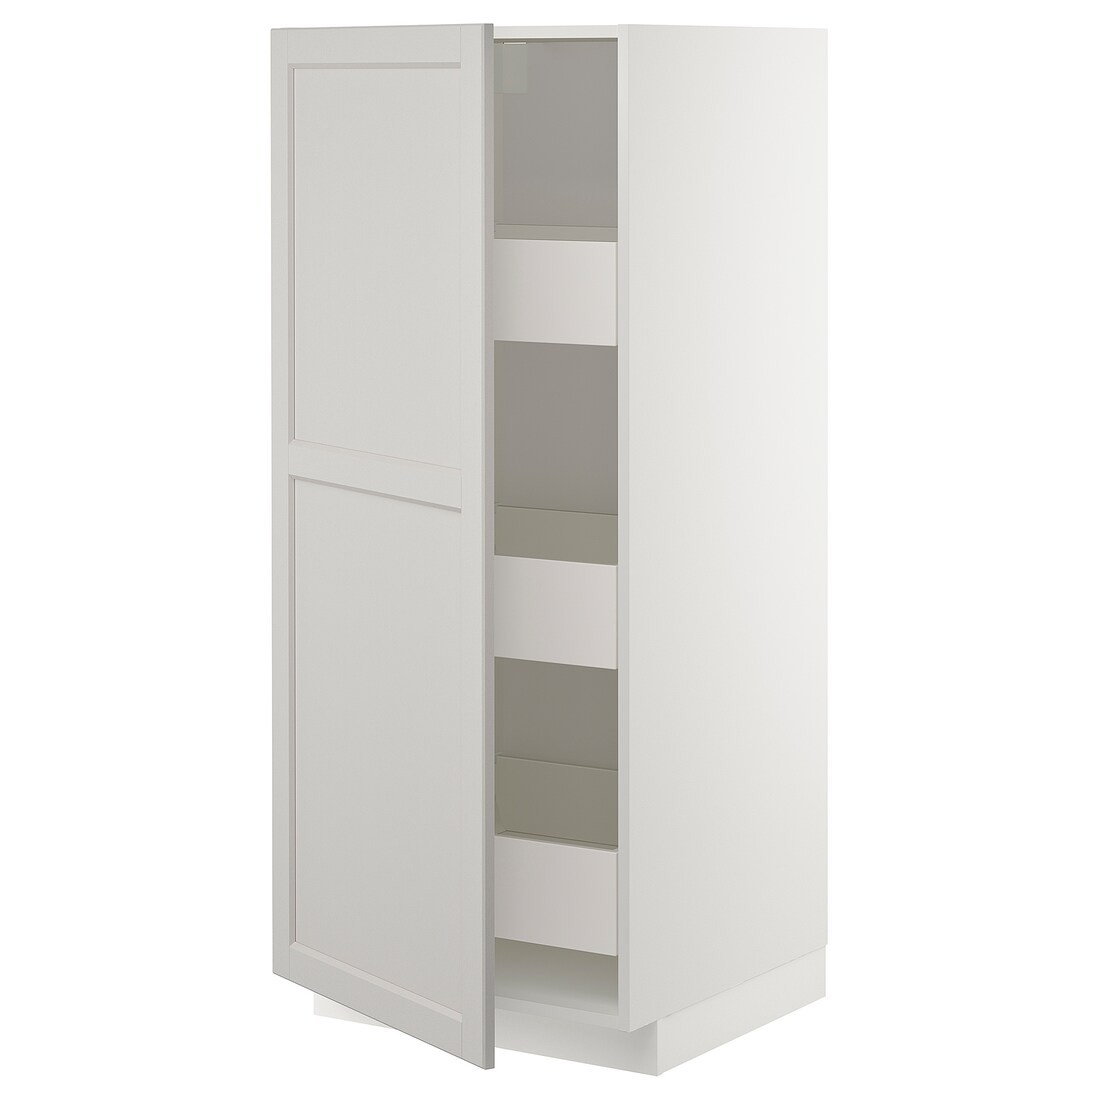 METOD МЕТОД / MAXIMERA МАКСИМЕРА Шкаф высокий с ящиками, белый / Lerhyttan светло-серый, 60x60x140 см